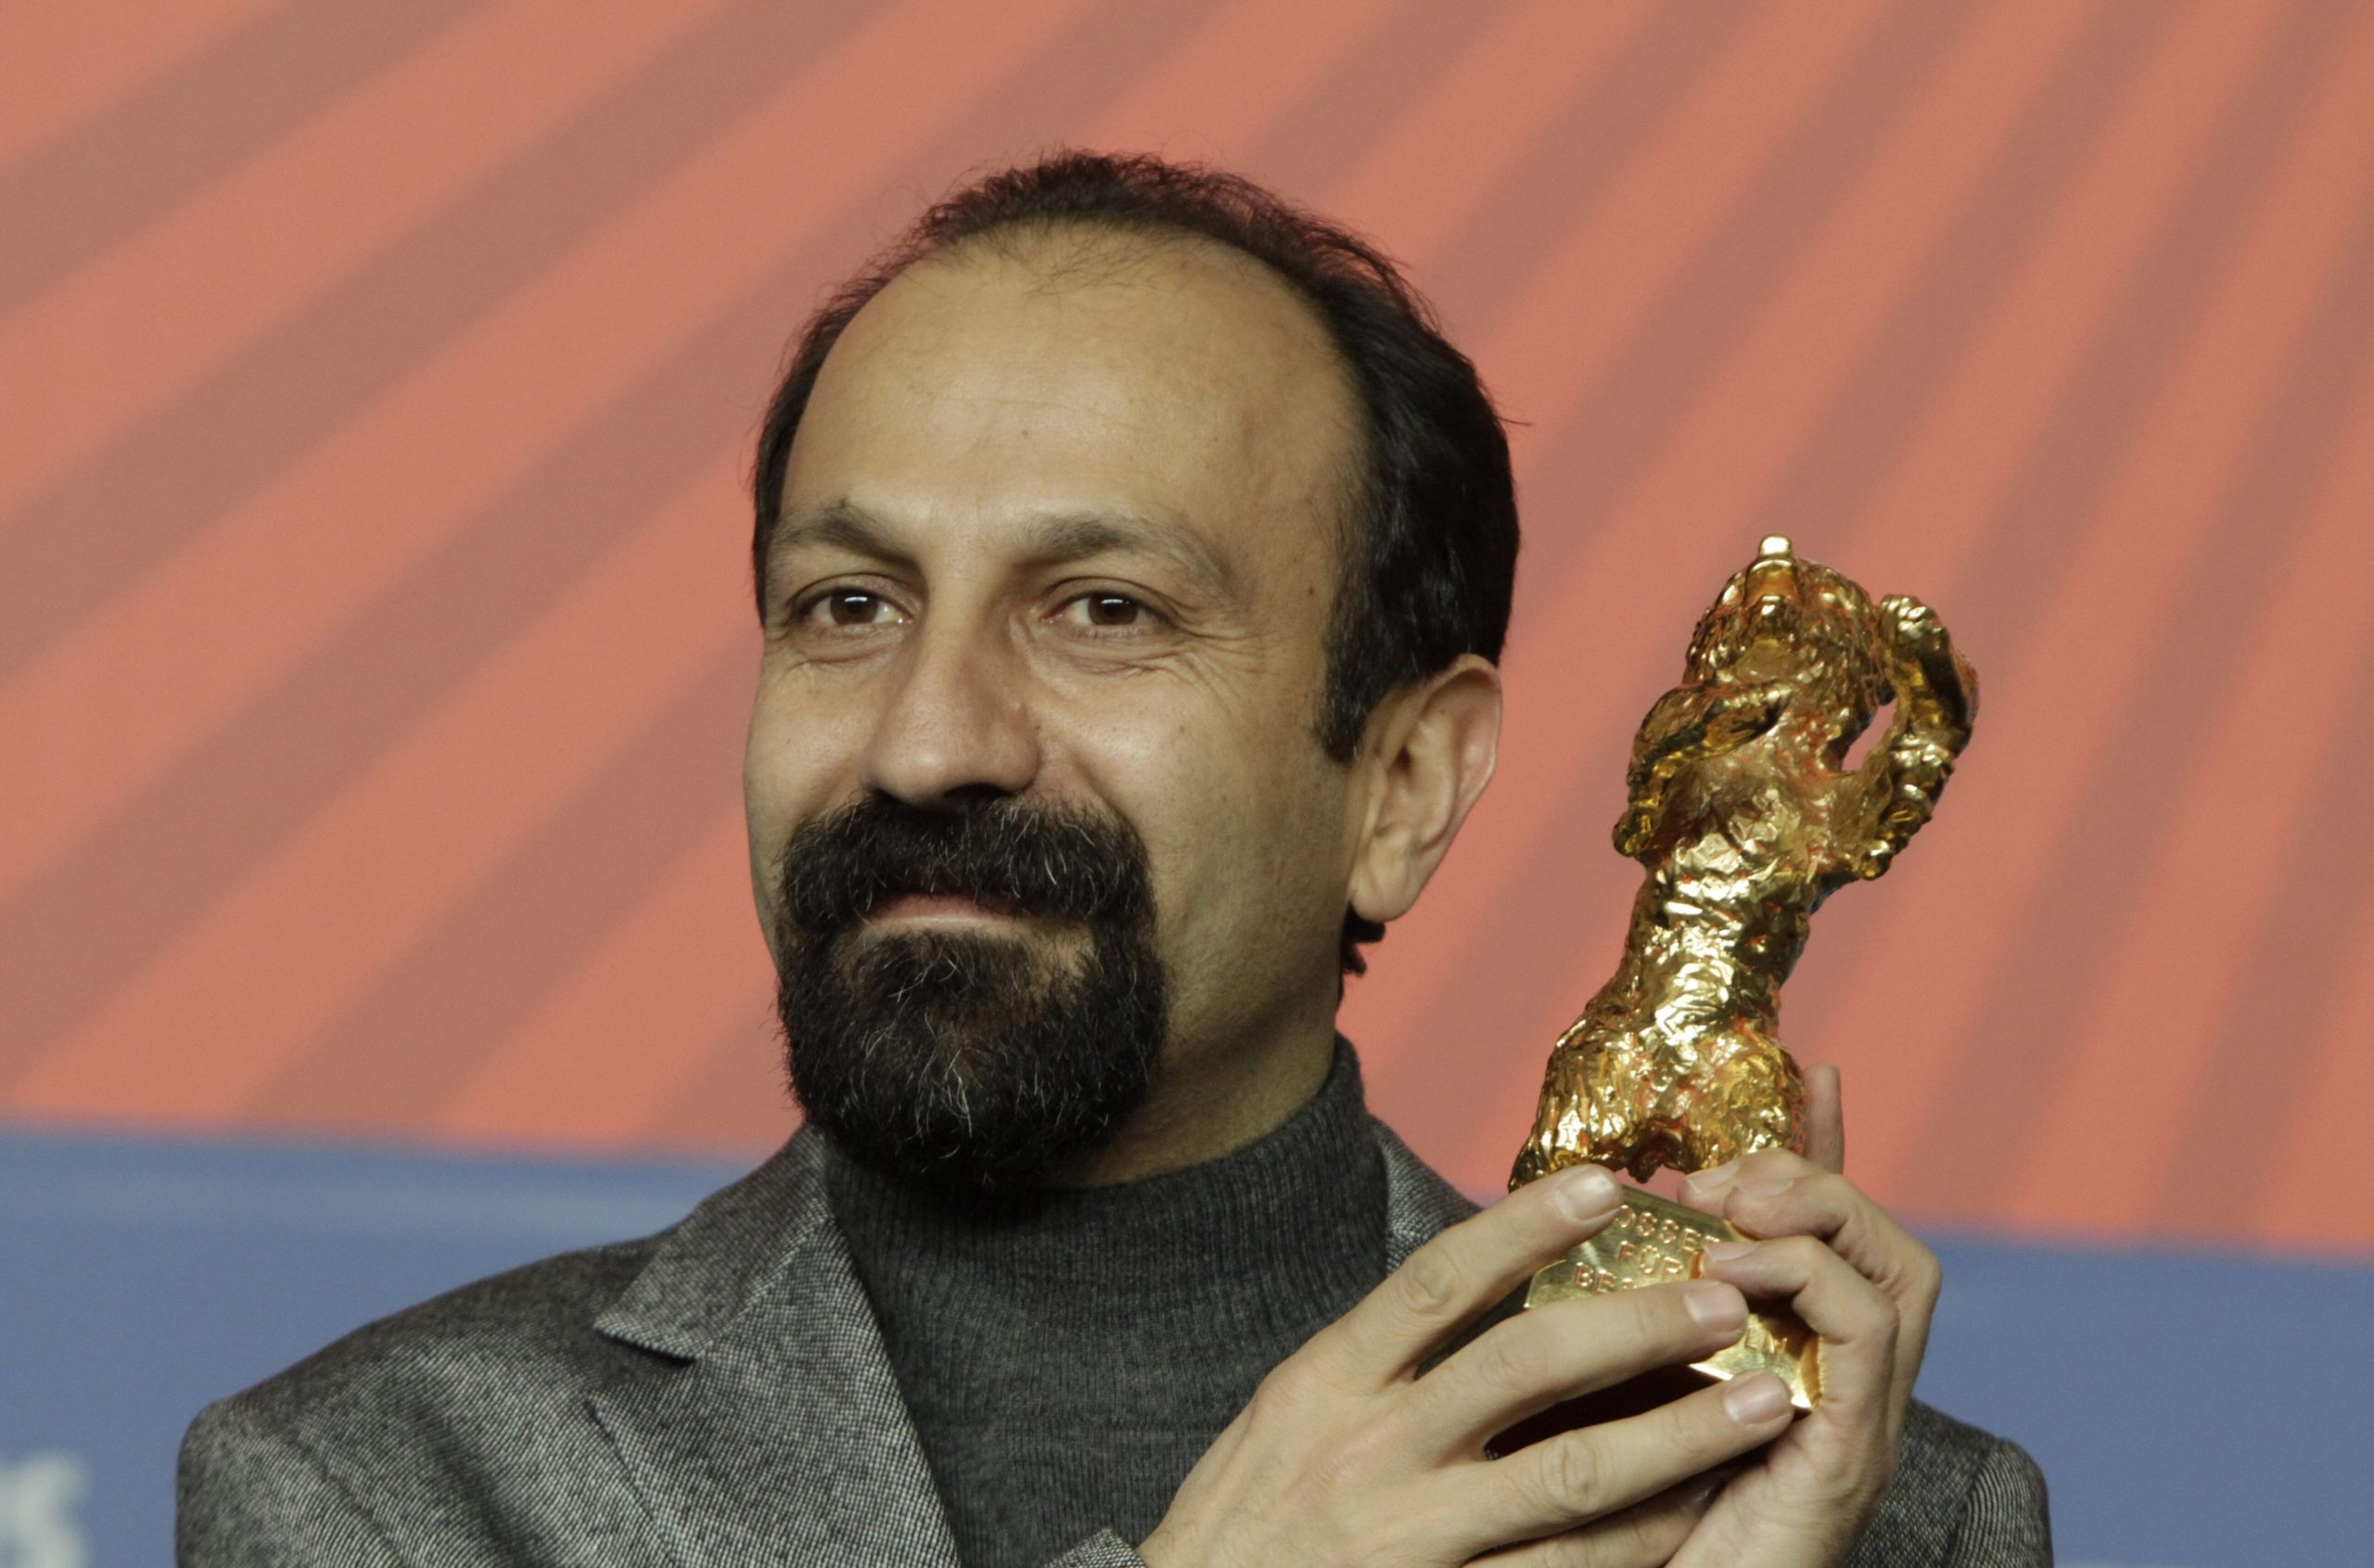 Der iranische Regisseur Asghar Farhadi gewinnt bei der Berlinale den Goldenen Bären für seinen Film "Nader und Simin". Foto: Imago/POP-EYE/Gabsch